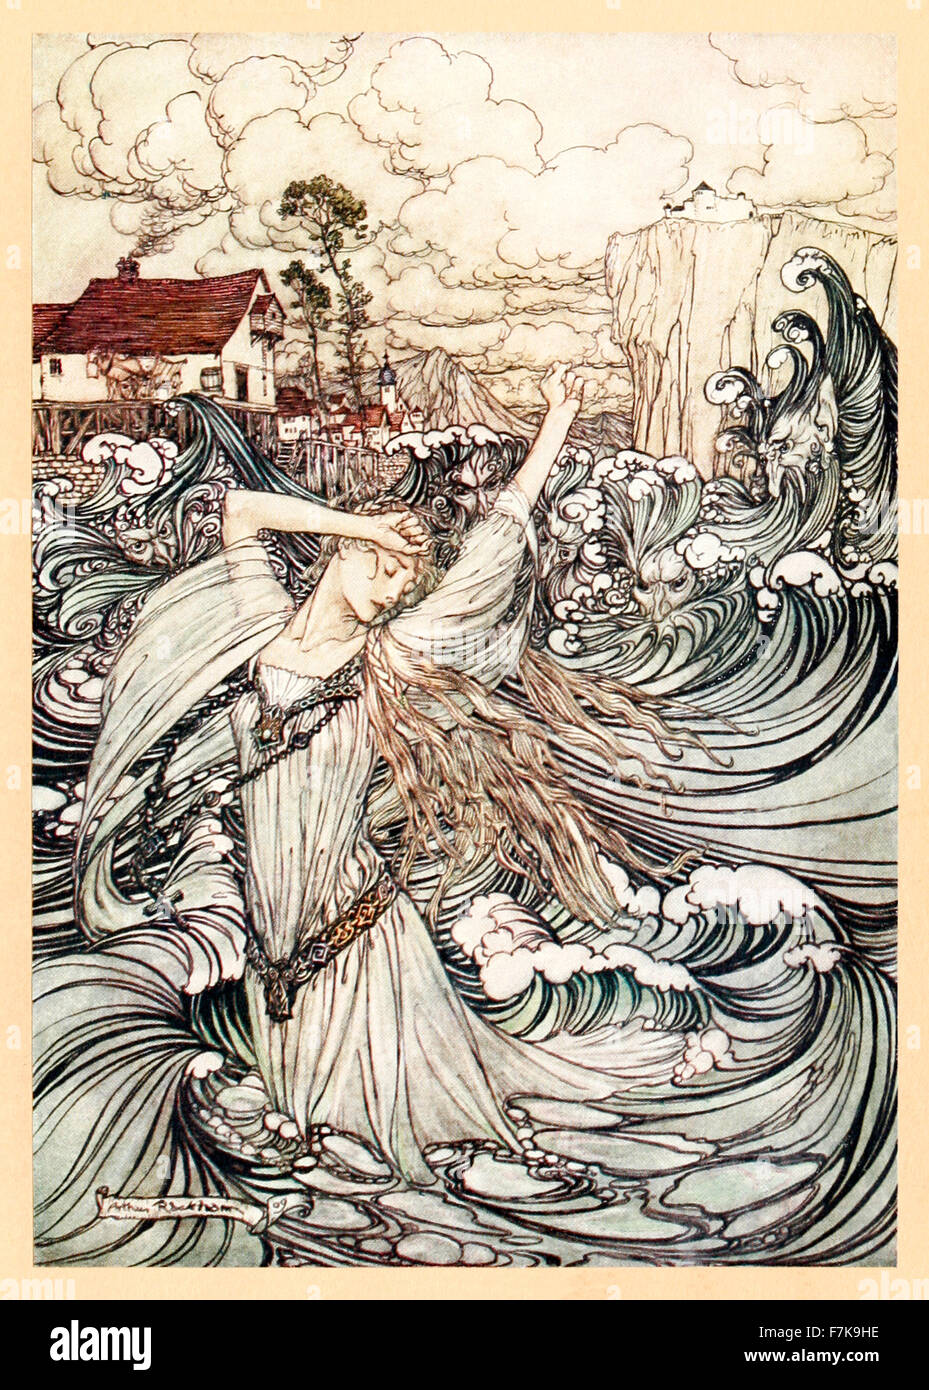 "Bald war sie für Anblick in der Donau verloren" von "Undine", illustriert von Arthur Rackham (1867-1939). Siehe Beschreibung für mehr Informationen. Stockfoto